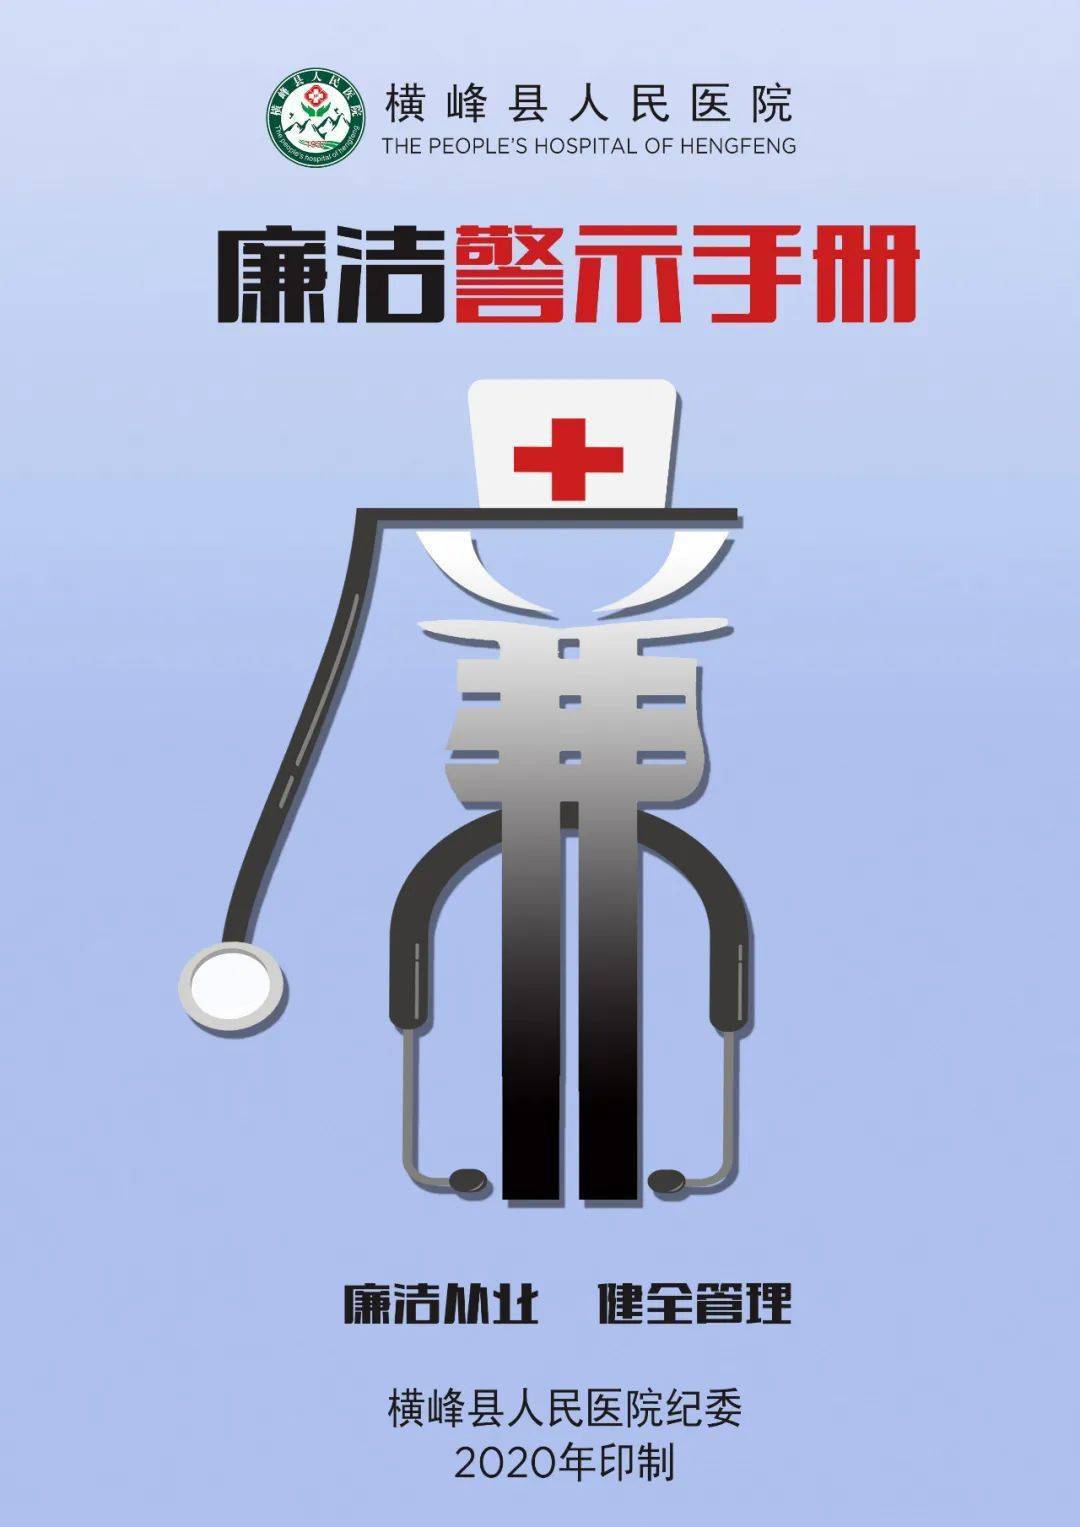 【廉洁医卫】加强廉洁风险防控,横峰县人民医院在行动